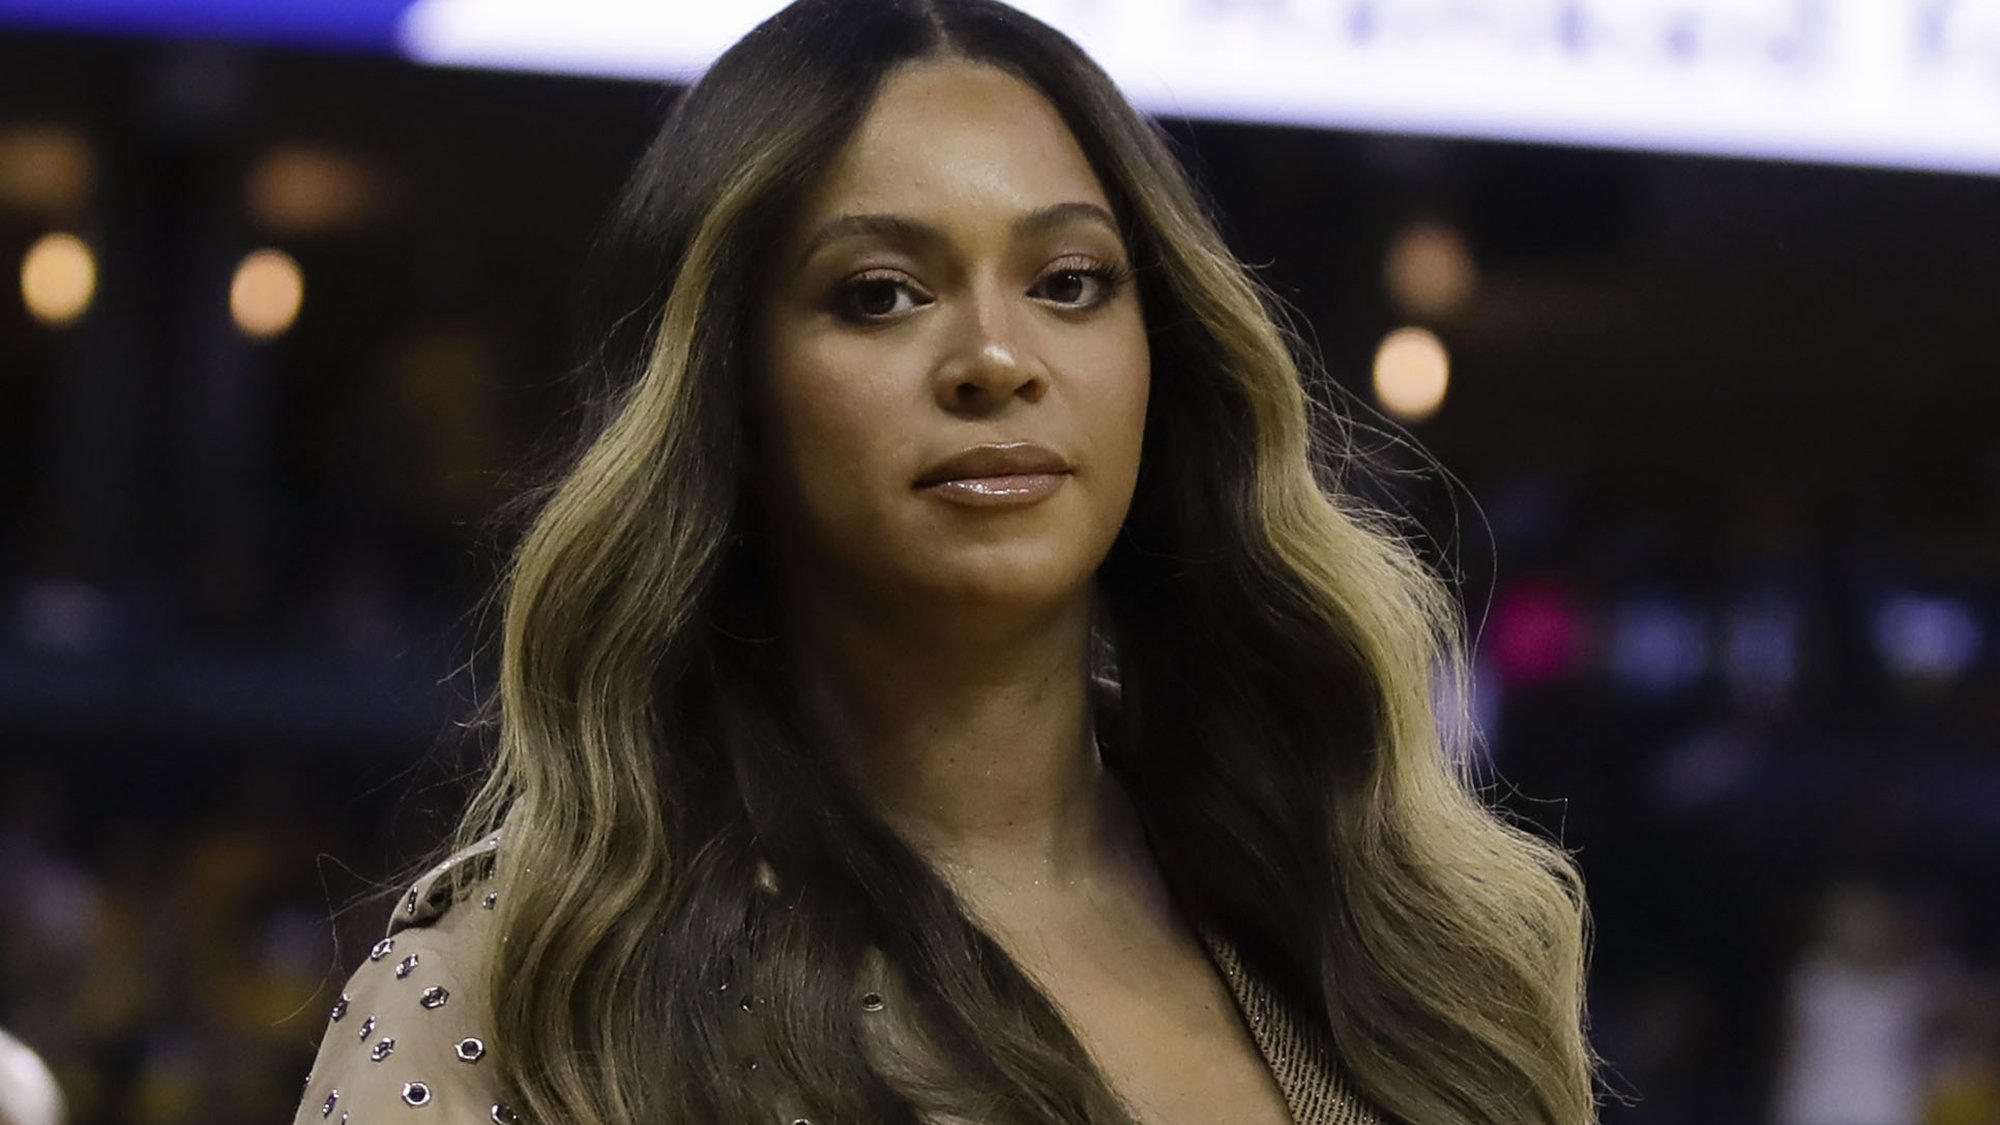 ARCHIV - 05.06.2019, USA, Oakland: Beyonce geht während der ersten Hälfte von Spiel 3 der Basketball-NBA-Endrunde zwischen den Golden State Warriors und den Toronto Raptors in Oakland zu ihrem Platz.     (zu dpa "Pop-Star Beyoncé veröffentlicht neues